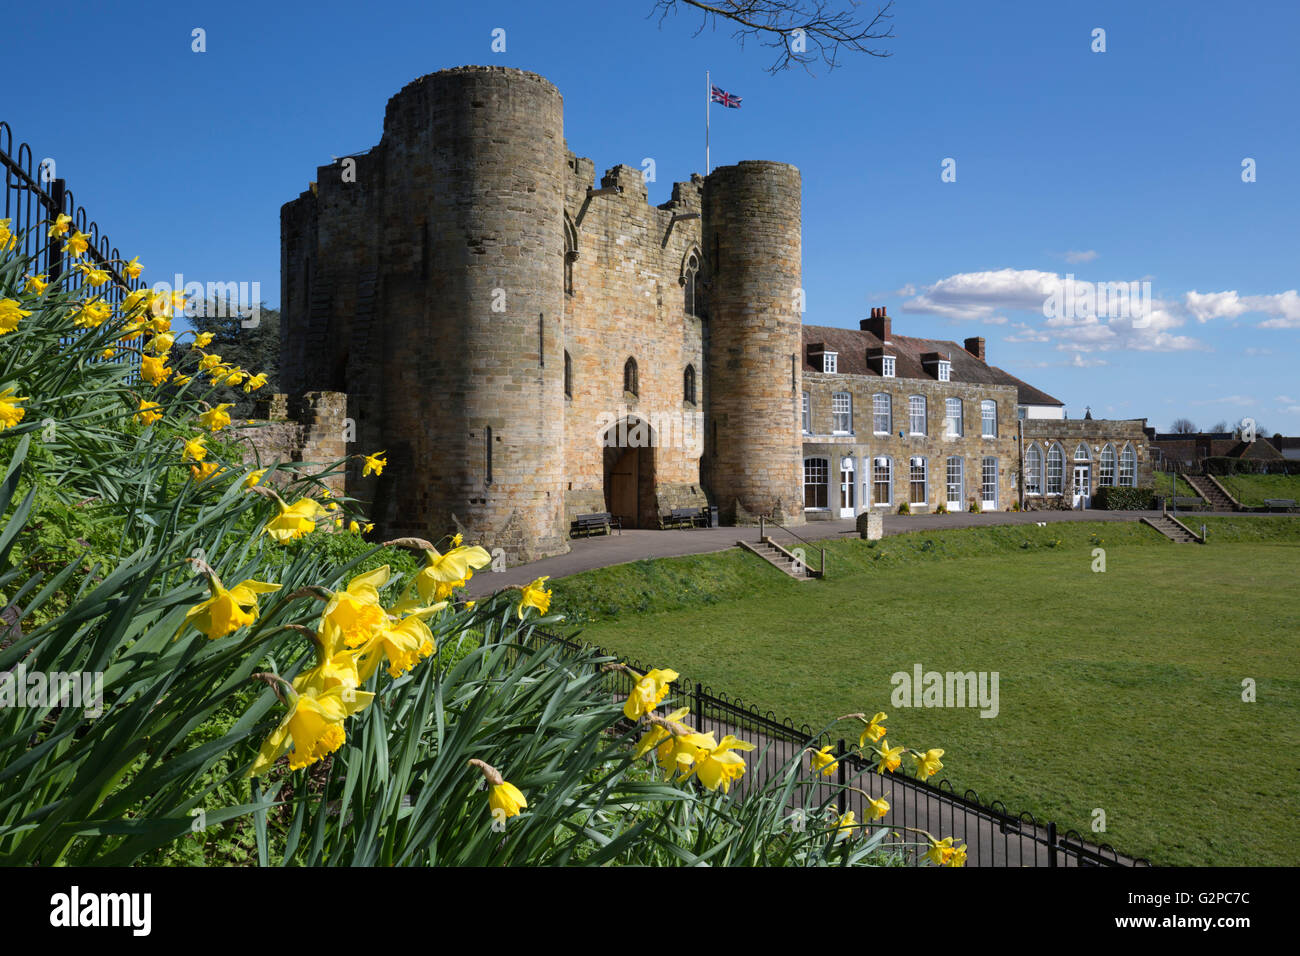 Tonbridge Castle de jonquilles, Tonbridge, Kent, Angleterre, Royaume-Uni, Europe Banque D'Images